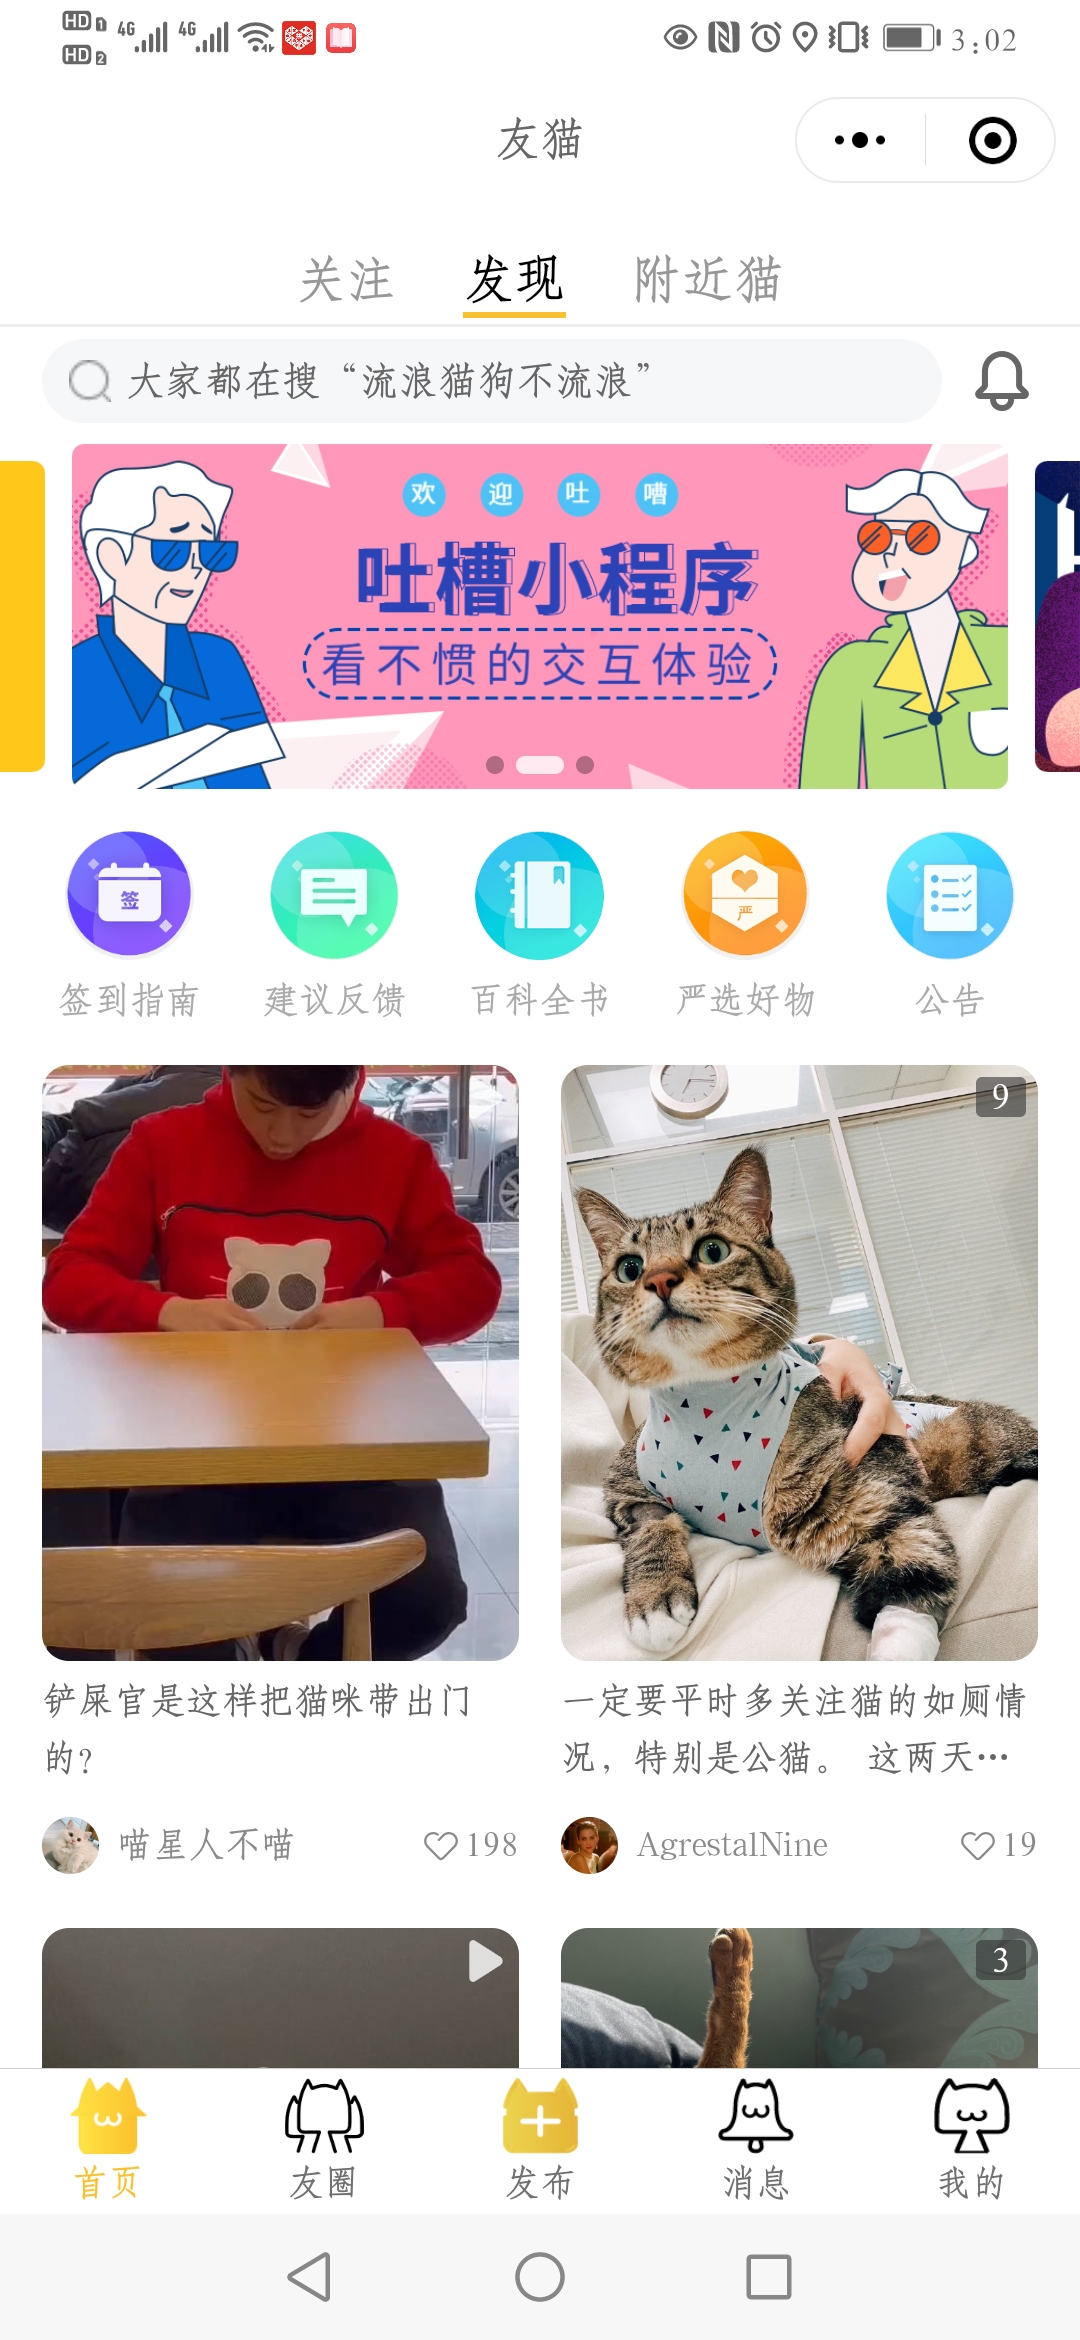 揭东宠物猫社交社区平台